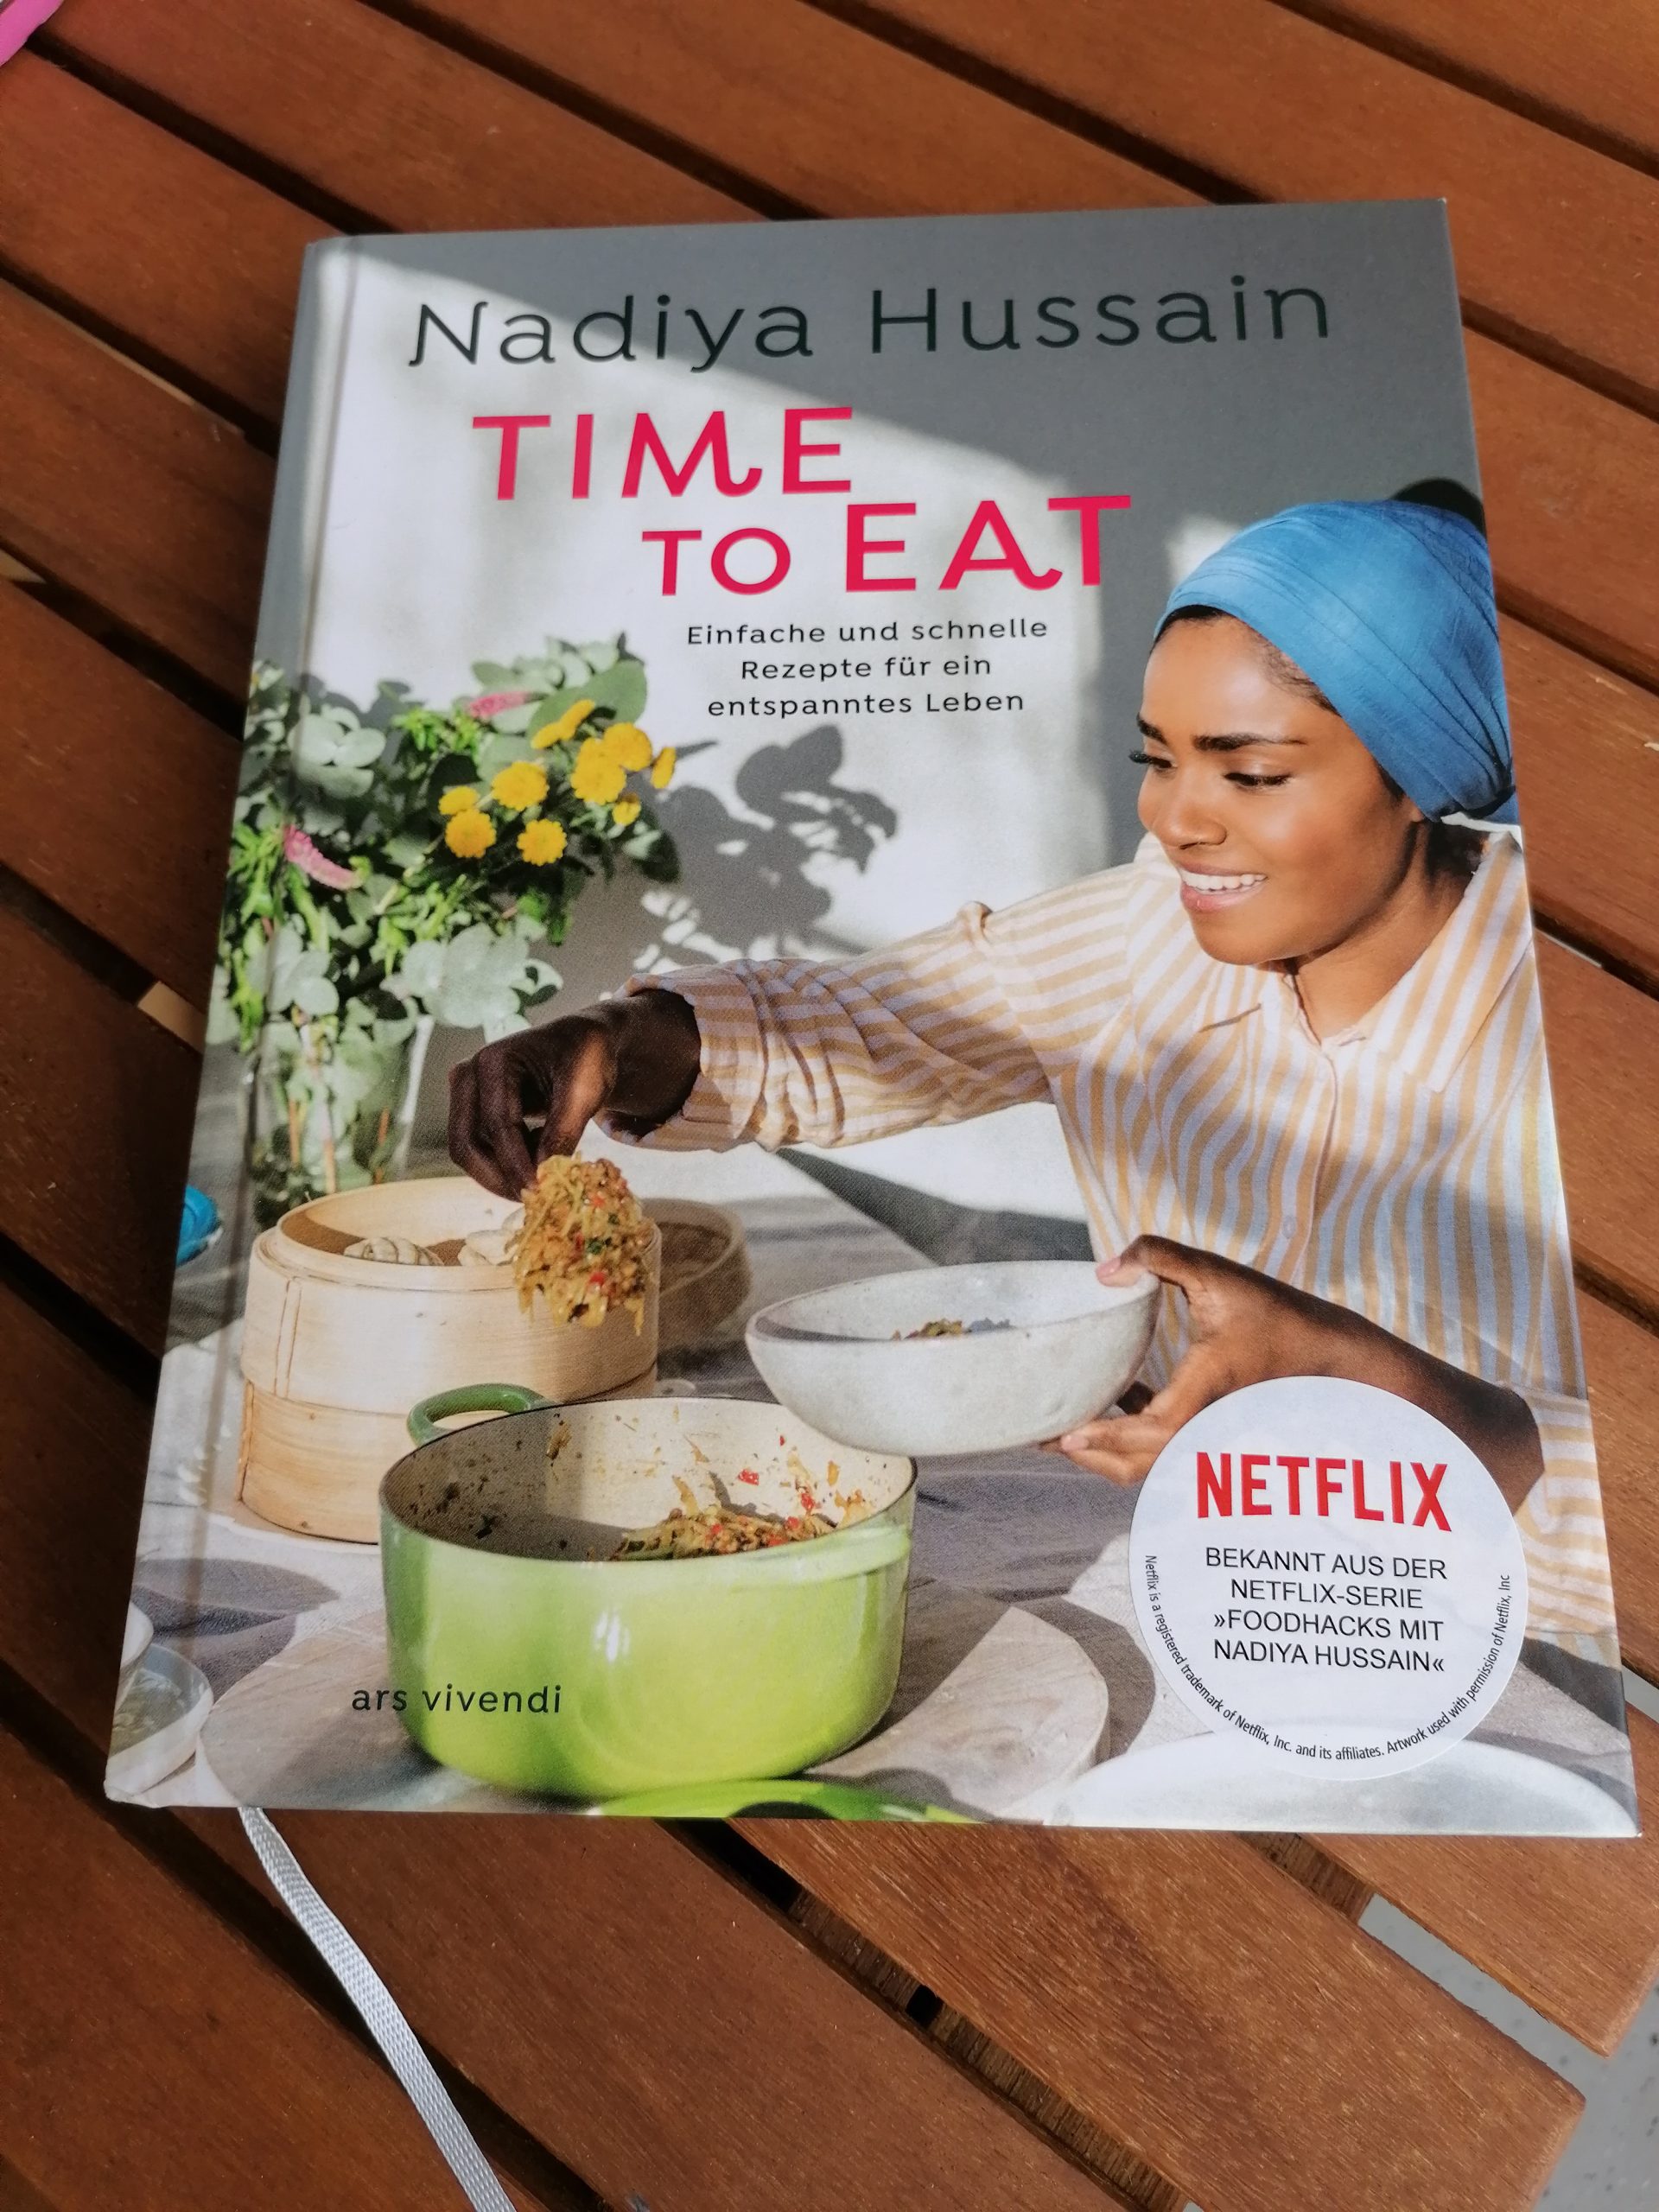 Time to eat – Nadiya Hussain